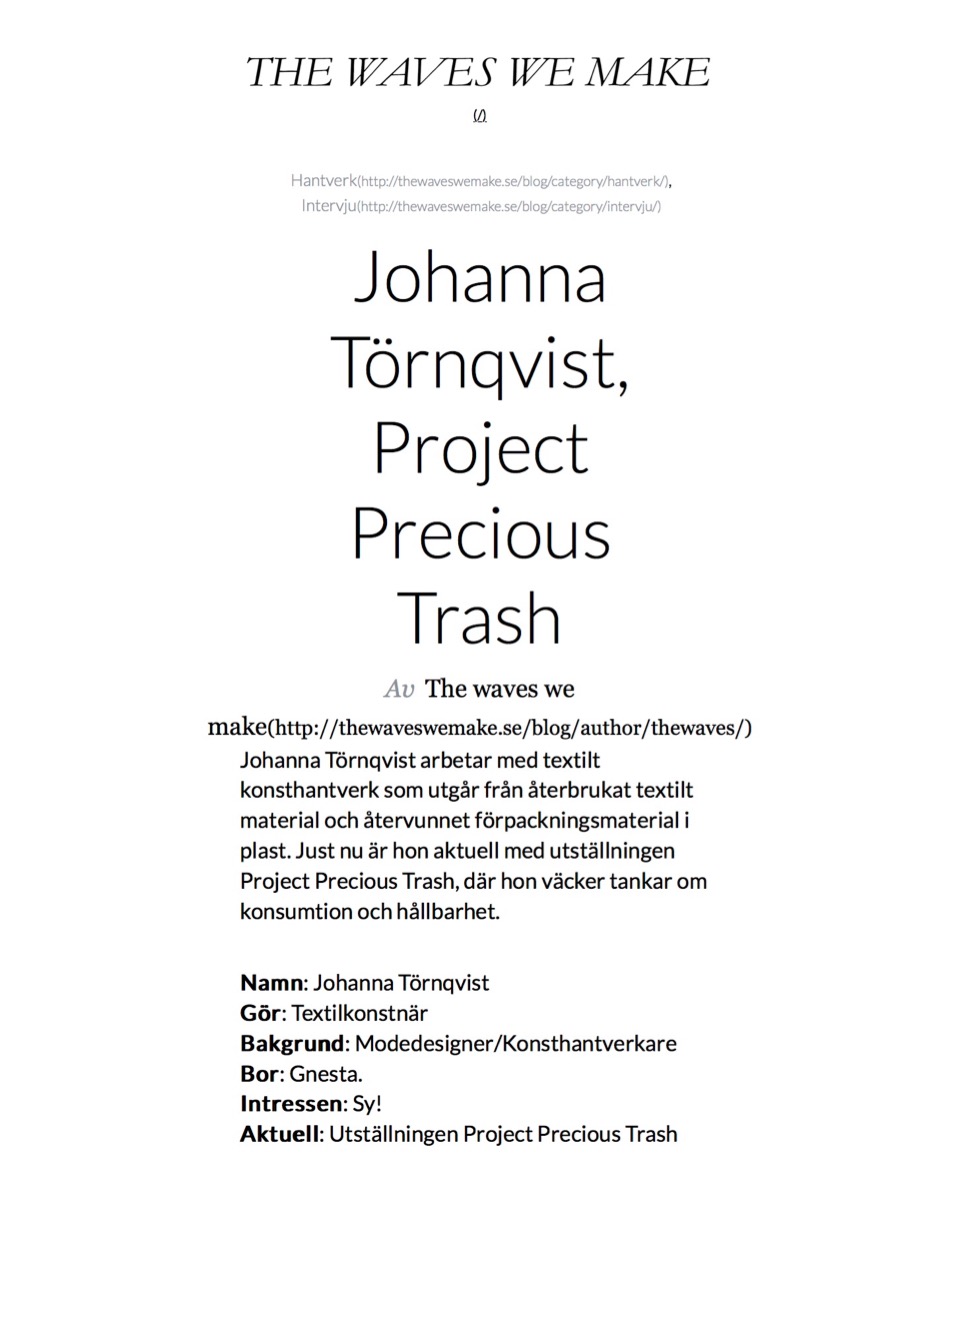 Johanna Törnqvist, Project Precious Trash - The waves we make1